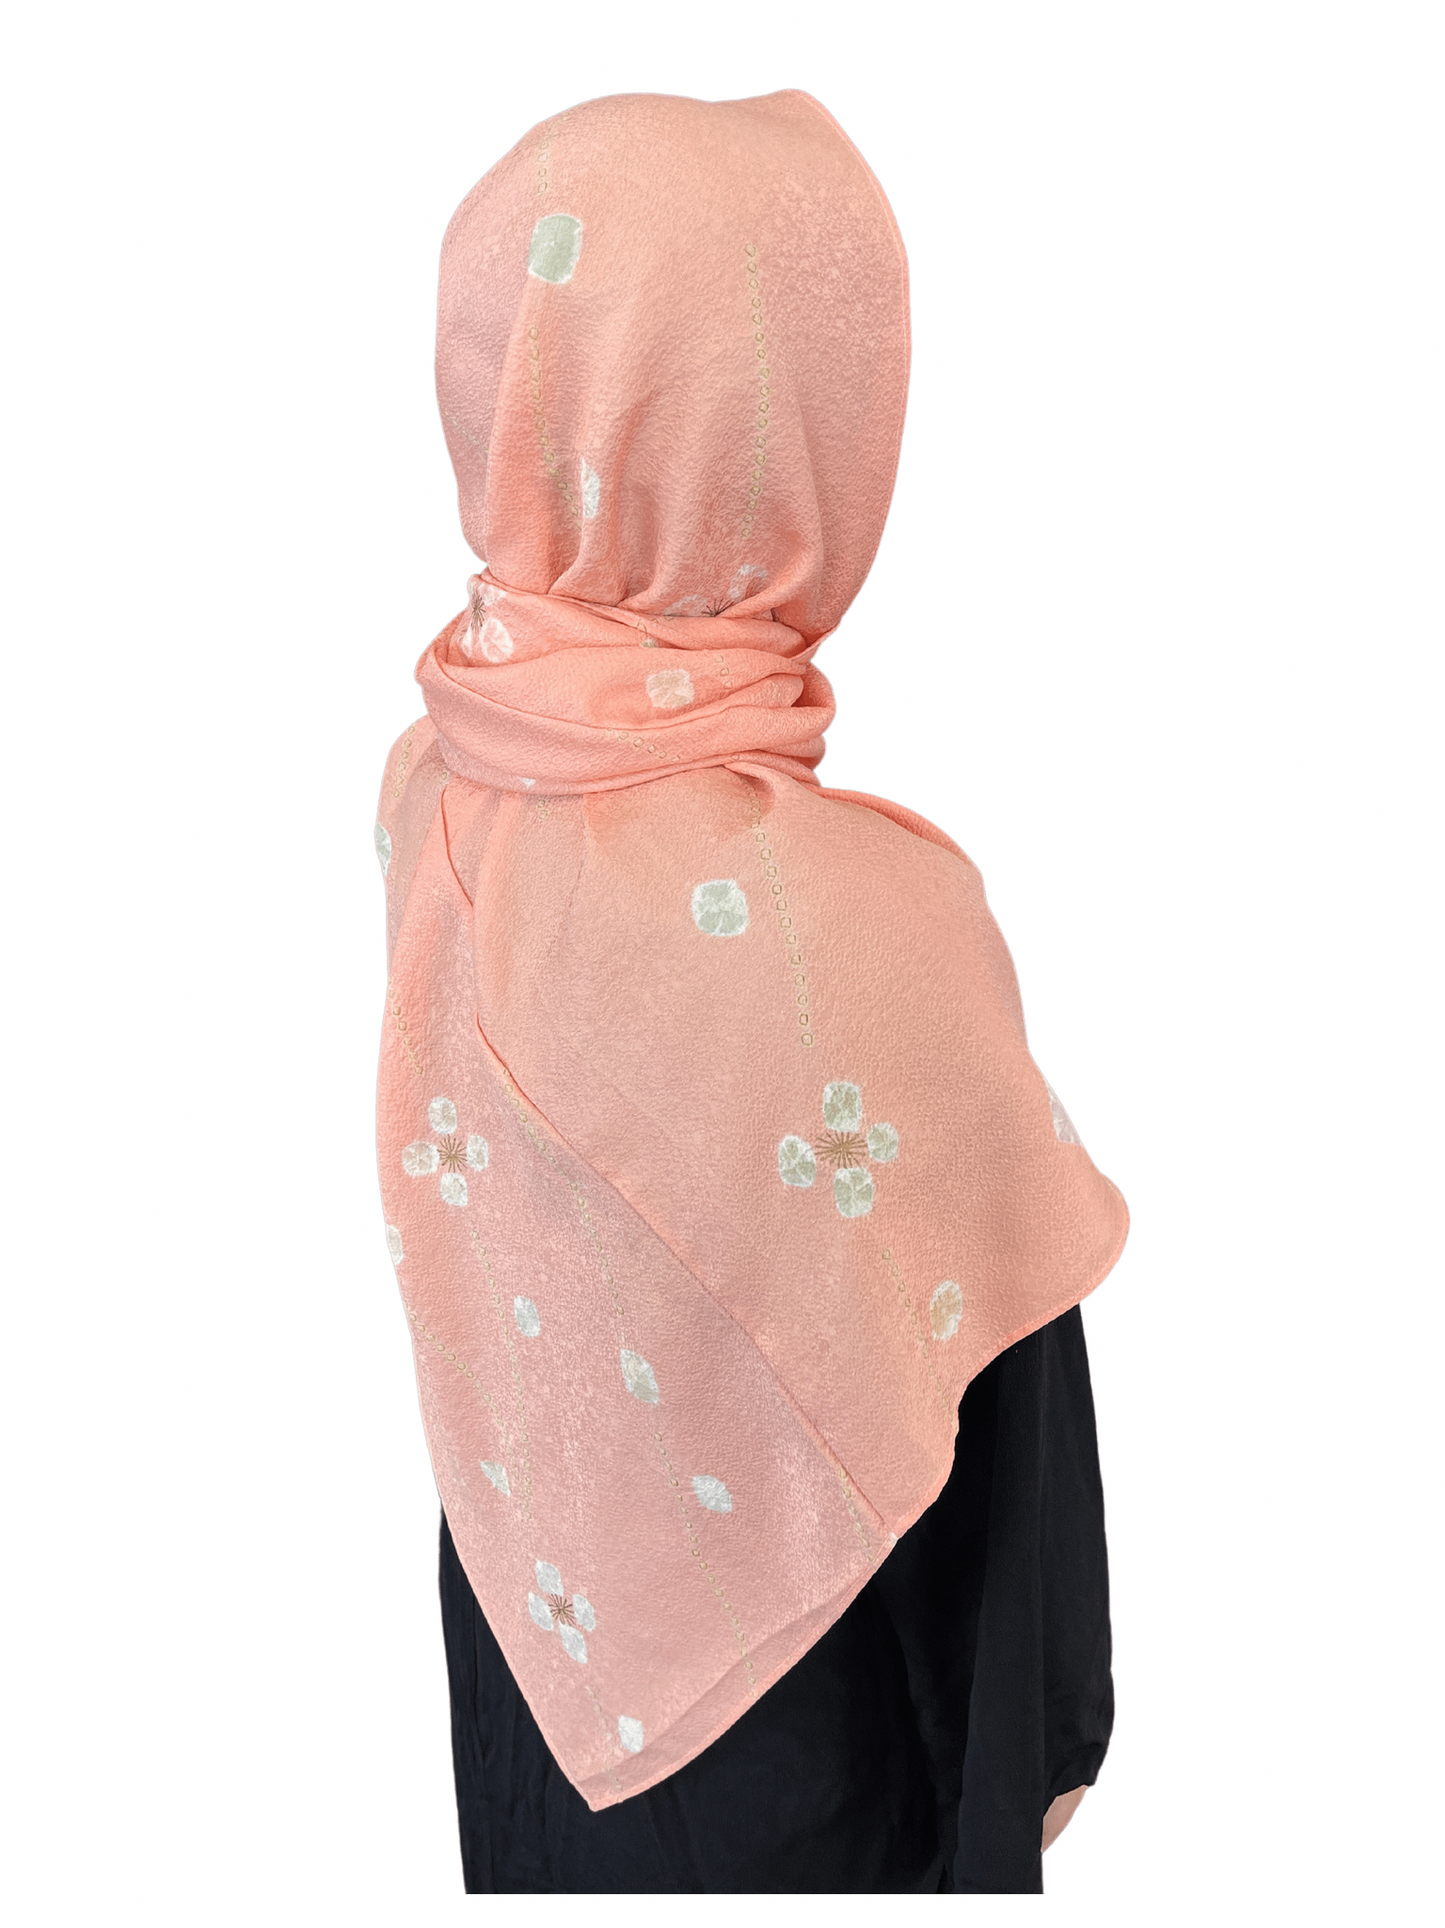 إذا كنت تبحث عن الهدايا التذكارية في العالم الإسلامي ، فماذا عن حجاب كيمونو مسرور بمسلمين جنوب شرق آسيا؟ نسخة من